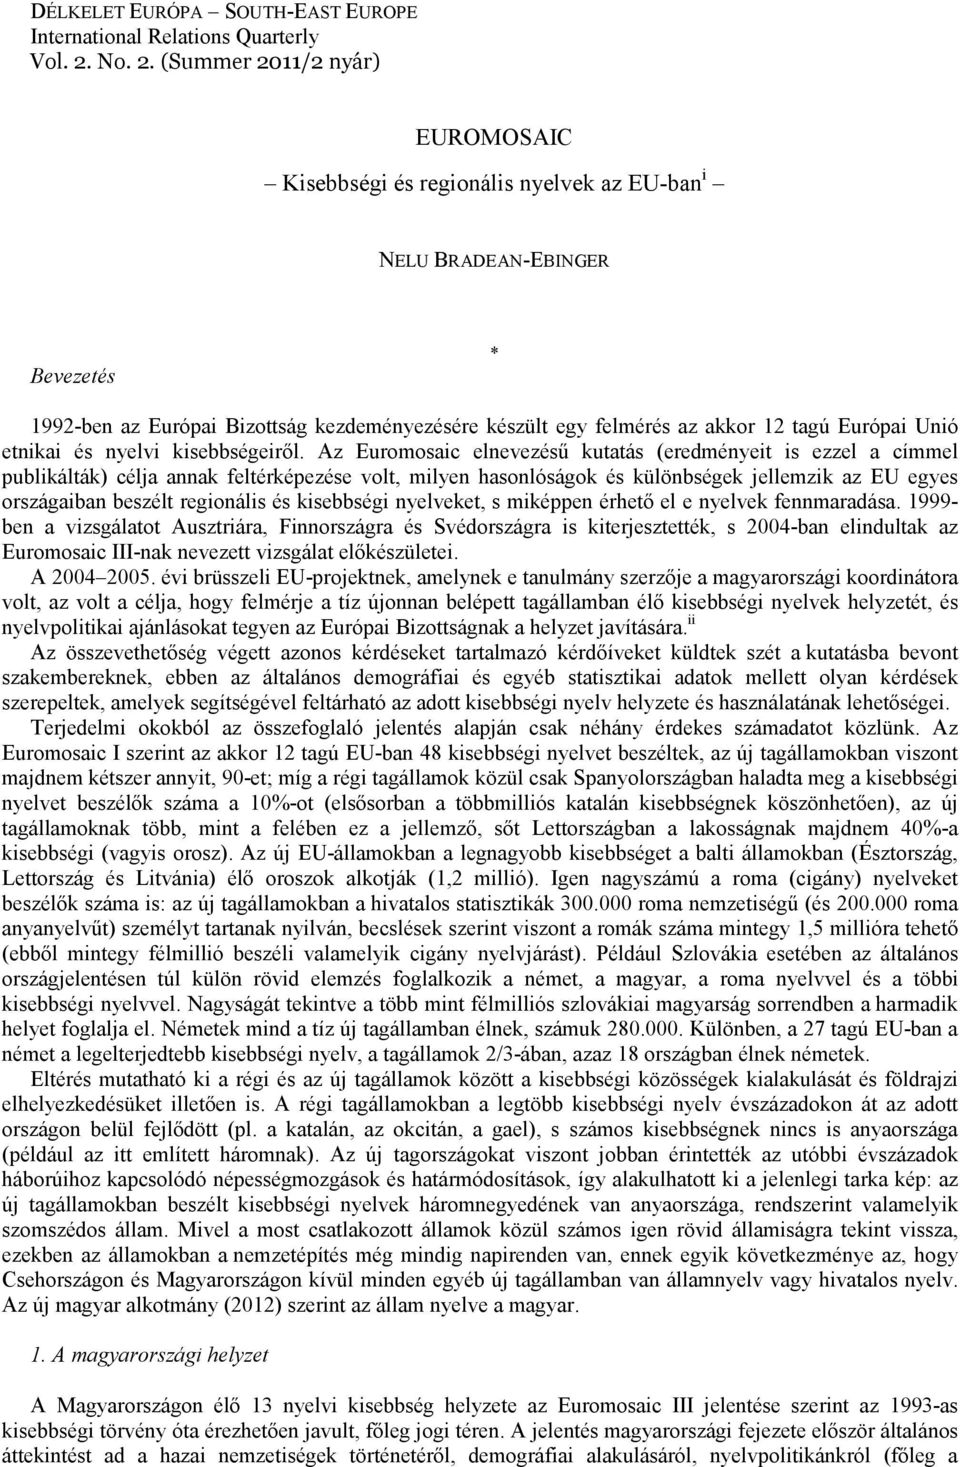 (Summer 2011/2 nyár) EUROMOSAIC Kisebbségi és regionális nyelvek az EU-ban i NELU BRADEAN-EBINGER Bevezetés * 1992-ben az Európai Bizottság kezdeményezésére készült egy felmérés az akkor 12 tagú